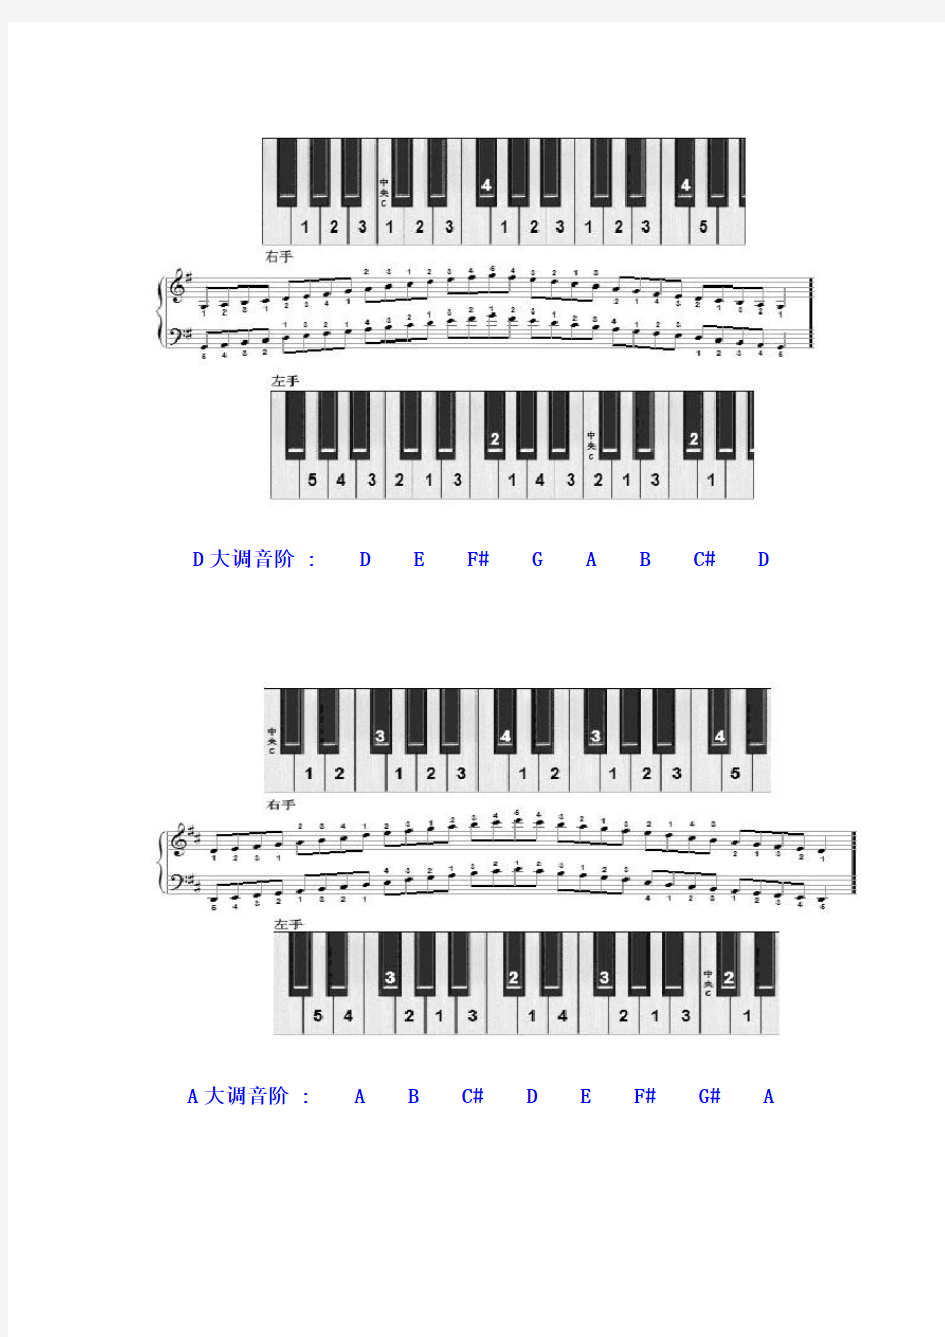 十二个大调的音阶及其左右手的指法图示